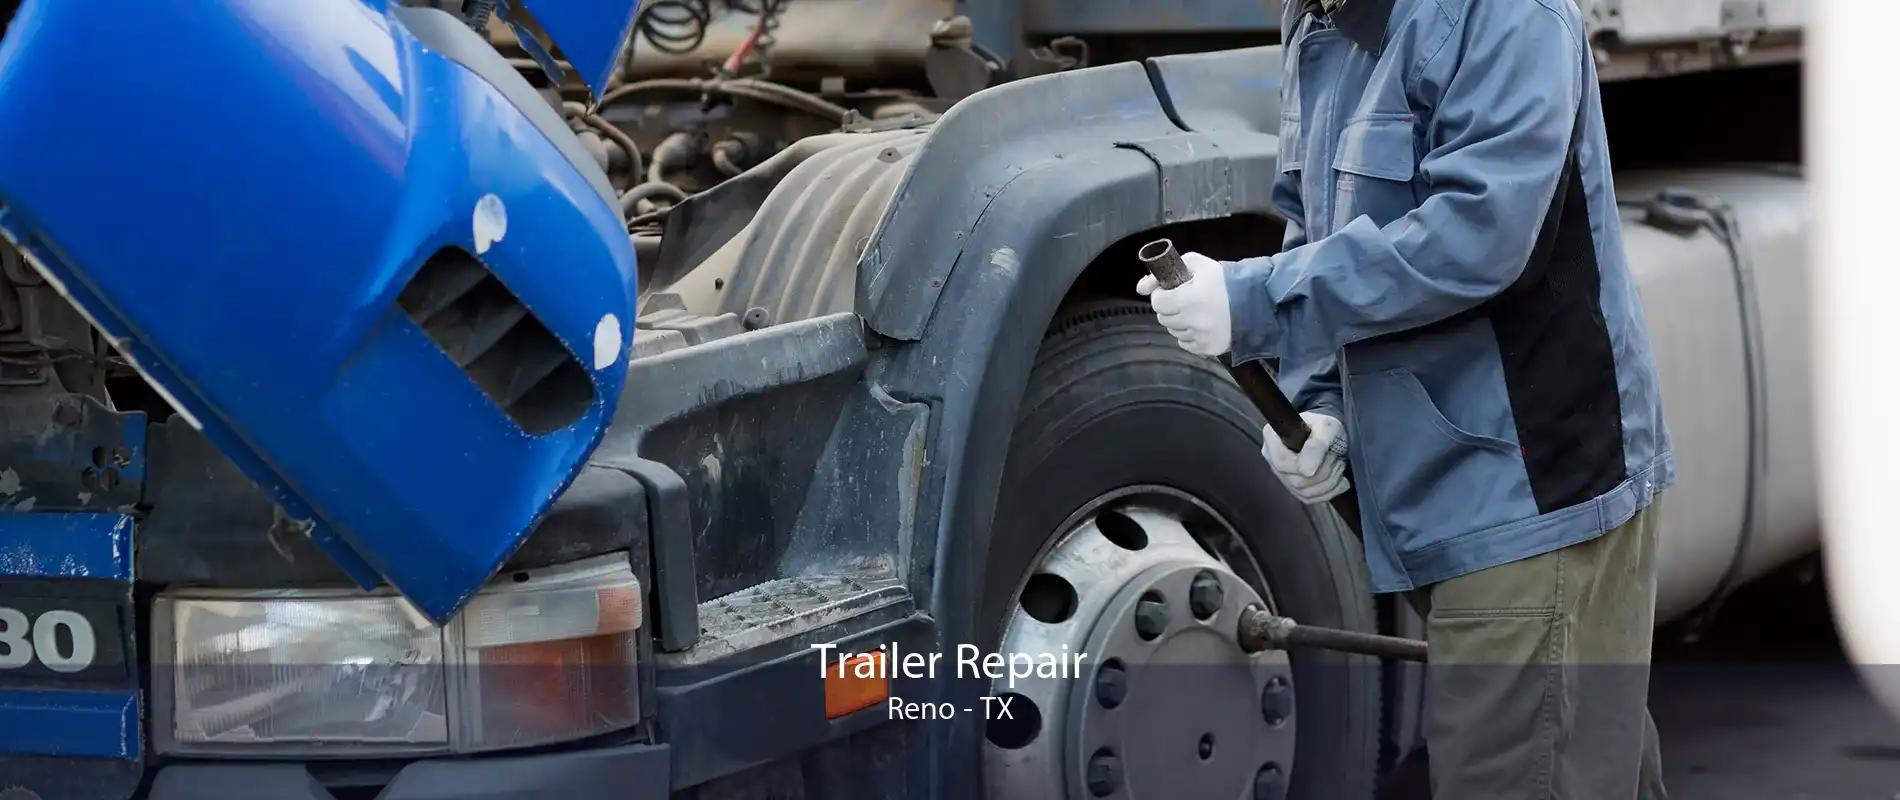 Trailer Repair Reno - TX